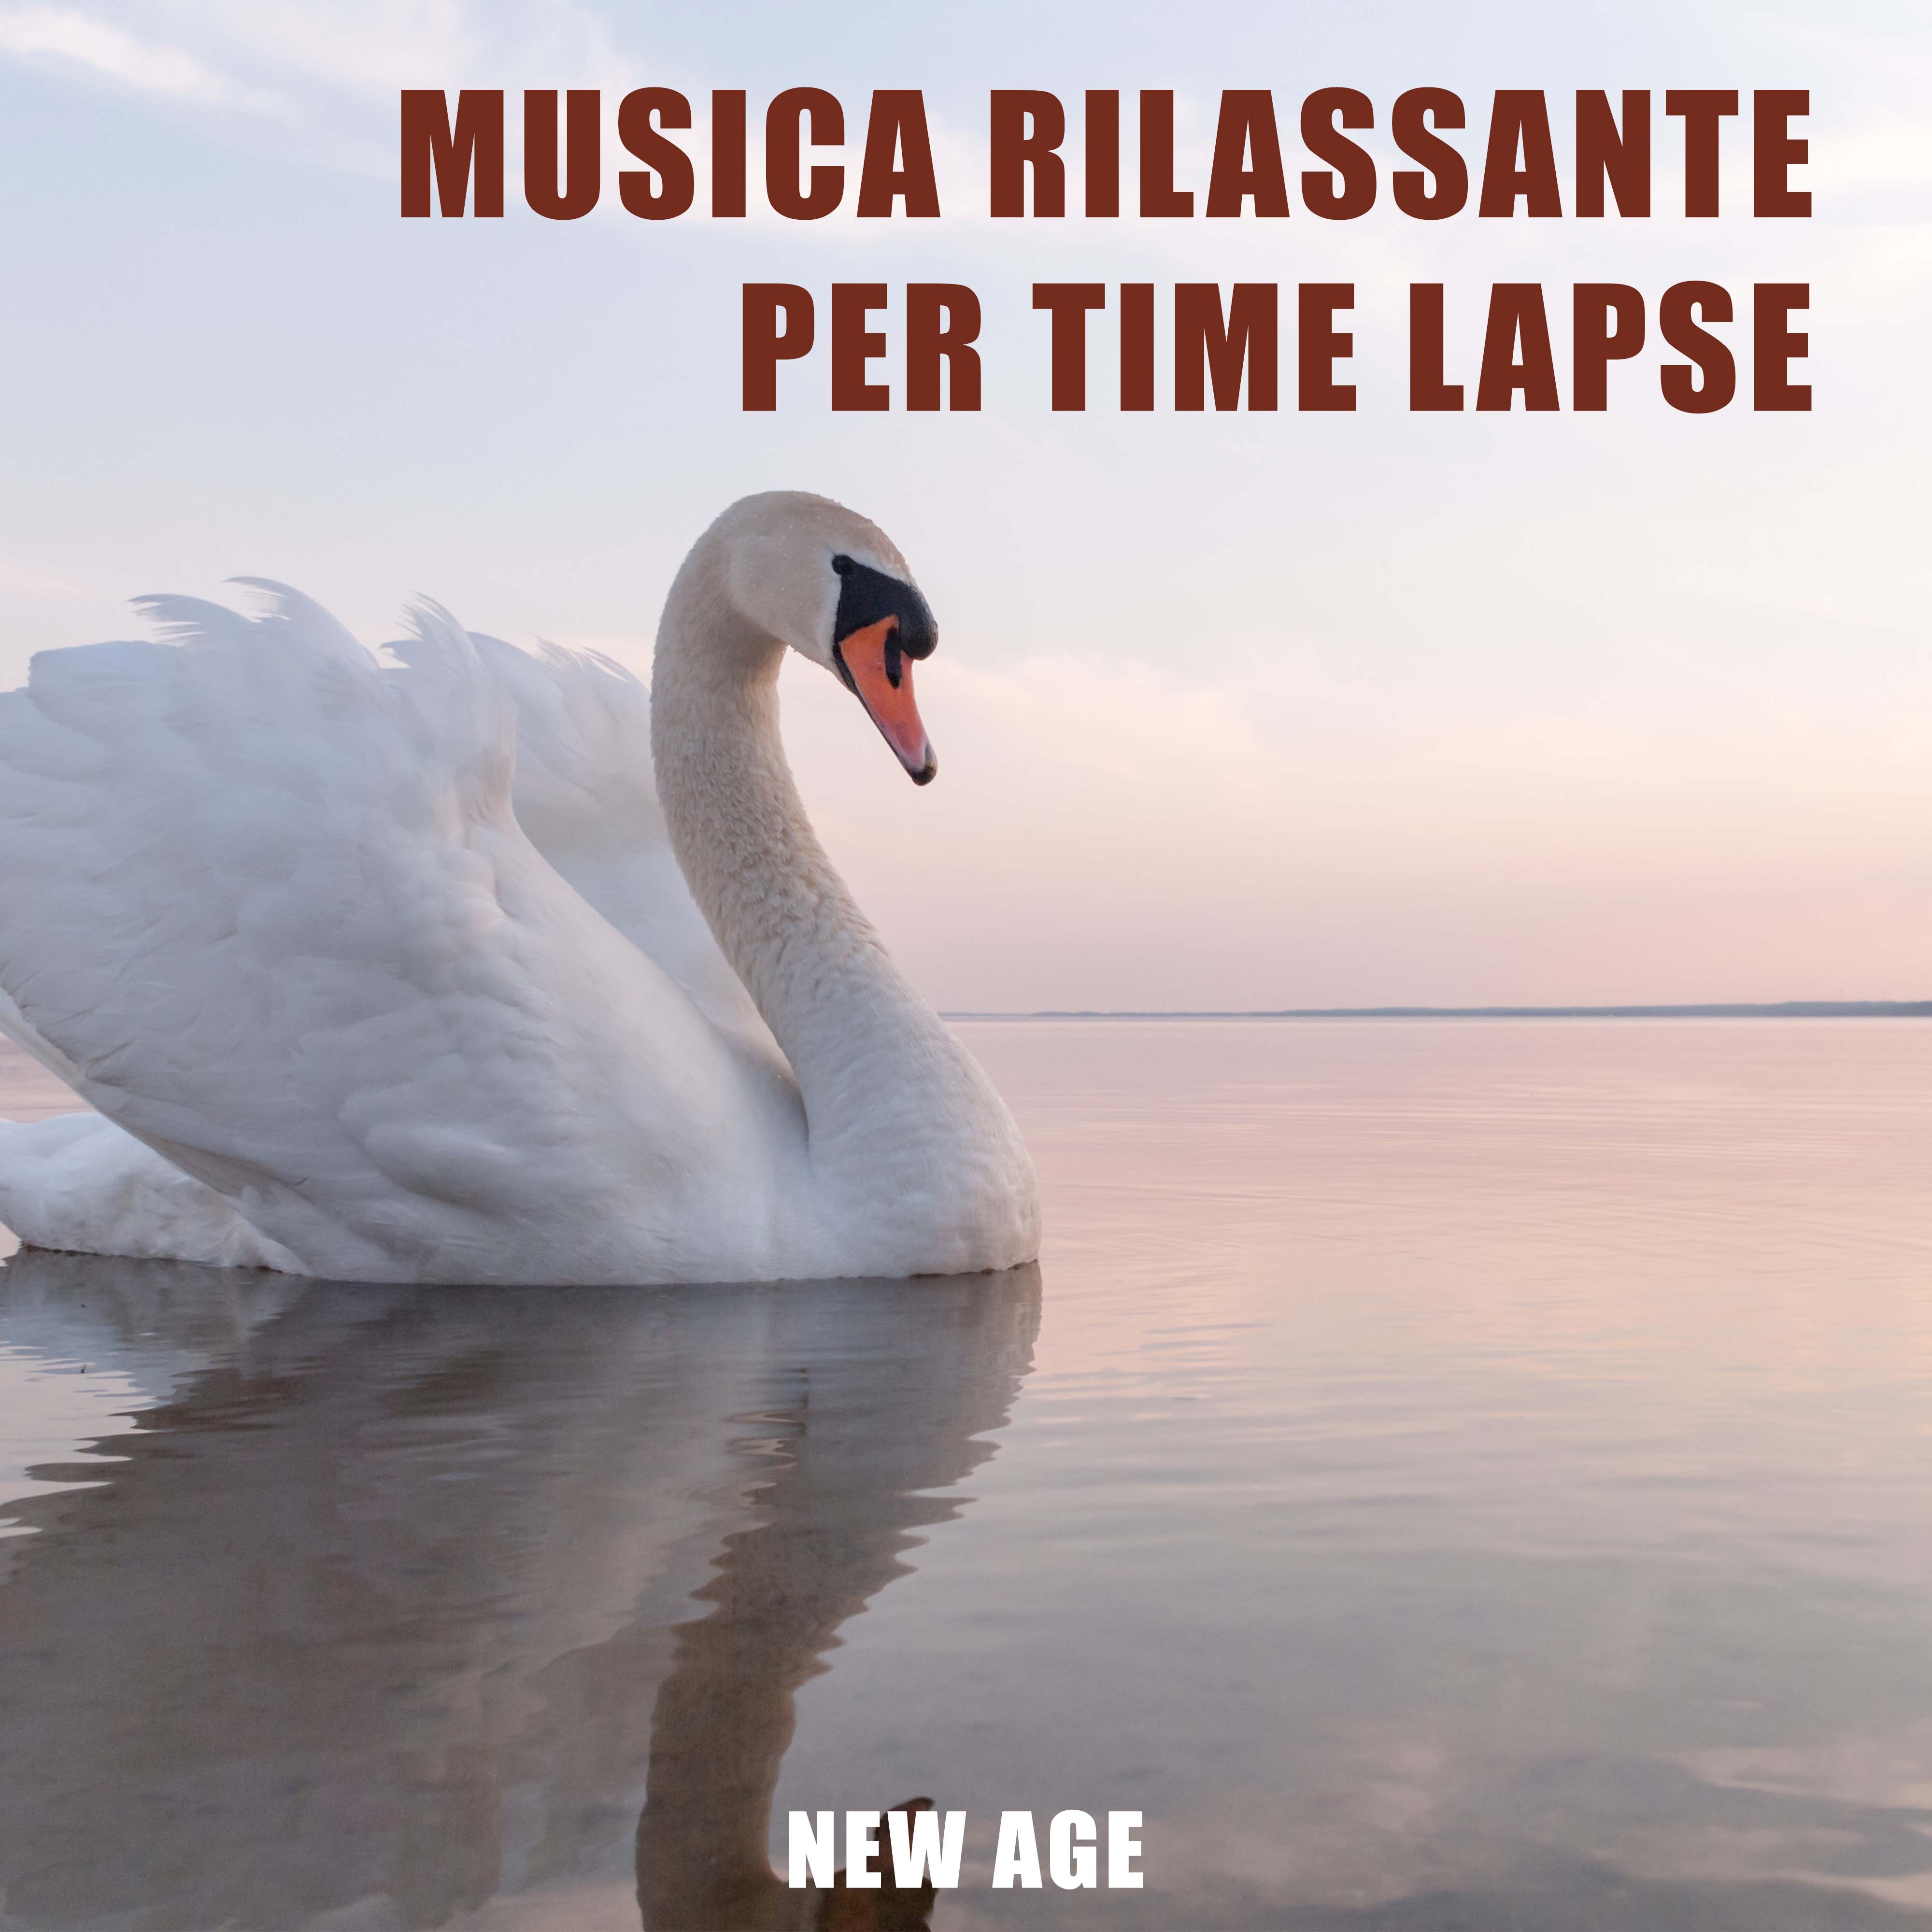 Musica Rilassante New Age per Time Lapse